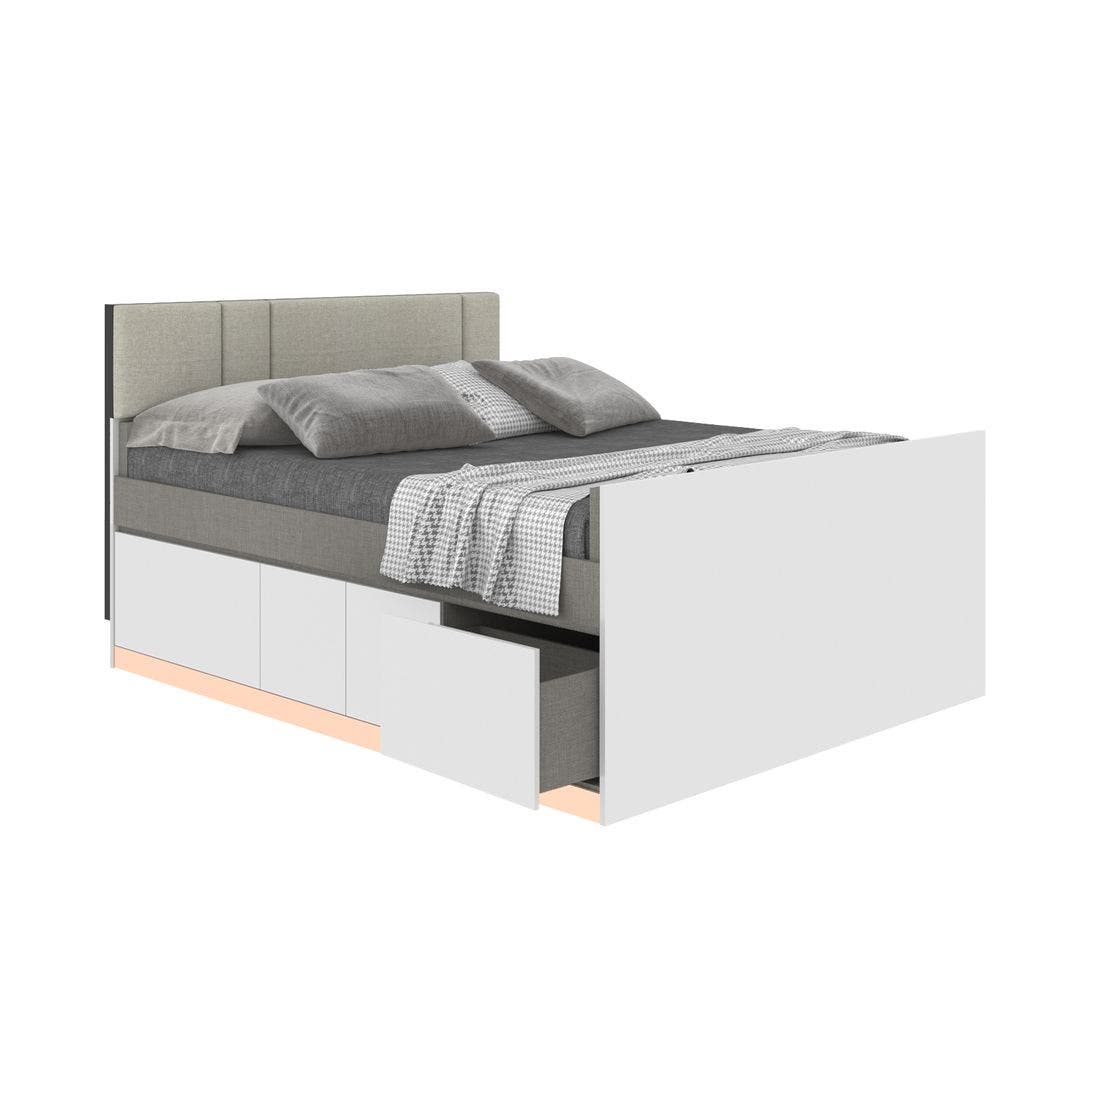 19203766-blisz-furniture-bedroom-furniture-beds-06